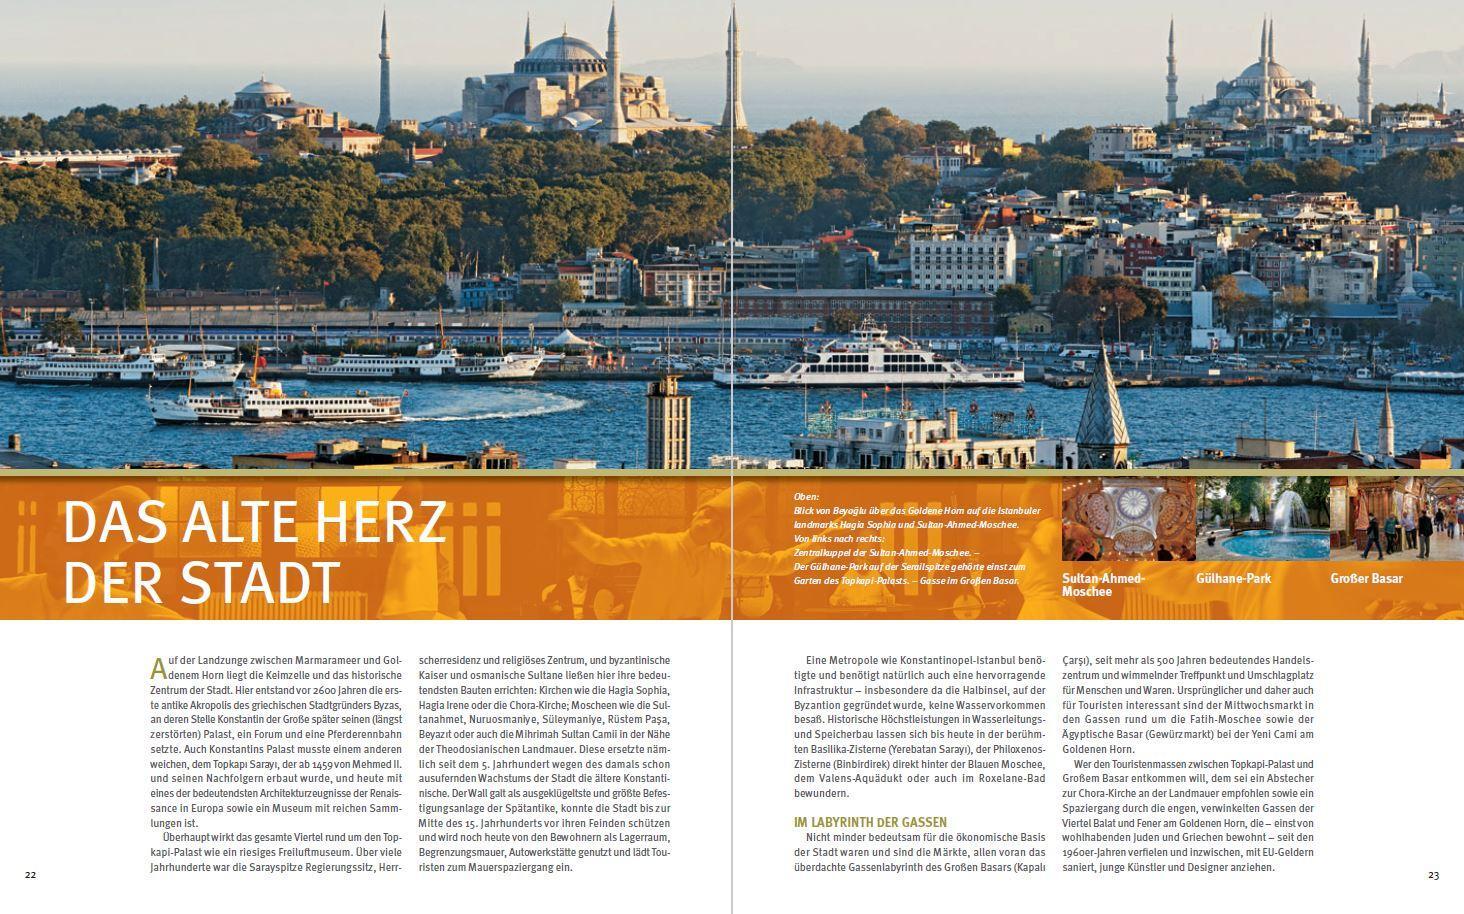 Bild: 9783800349111 | Best of ISTANBUL - 66 Highlights | Ein Bildband mit über 175 Bildern